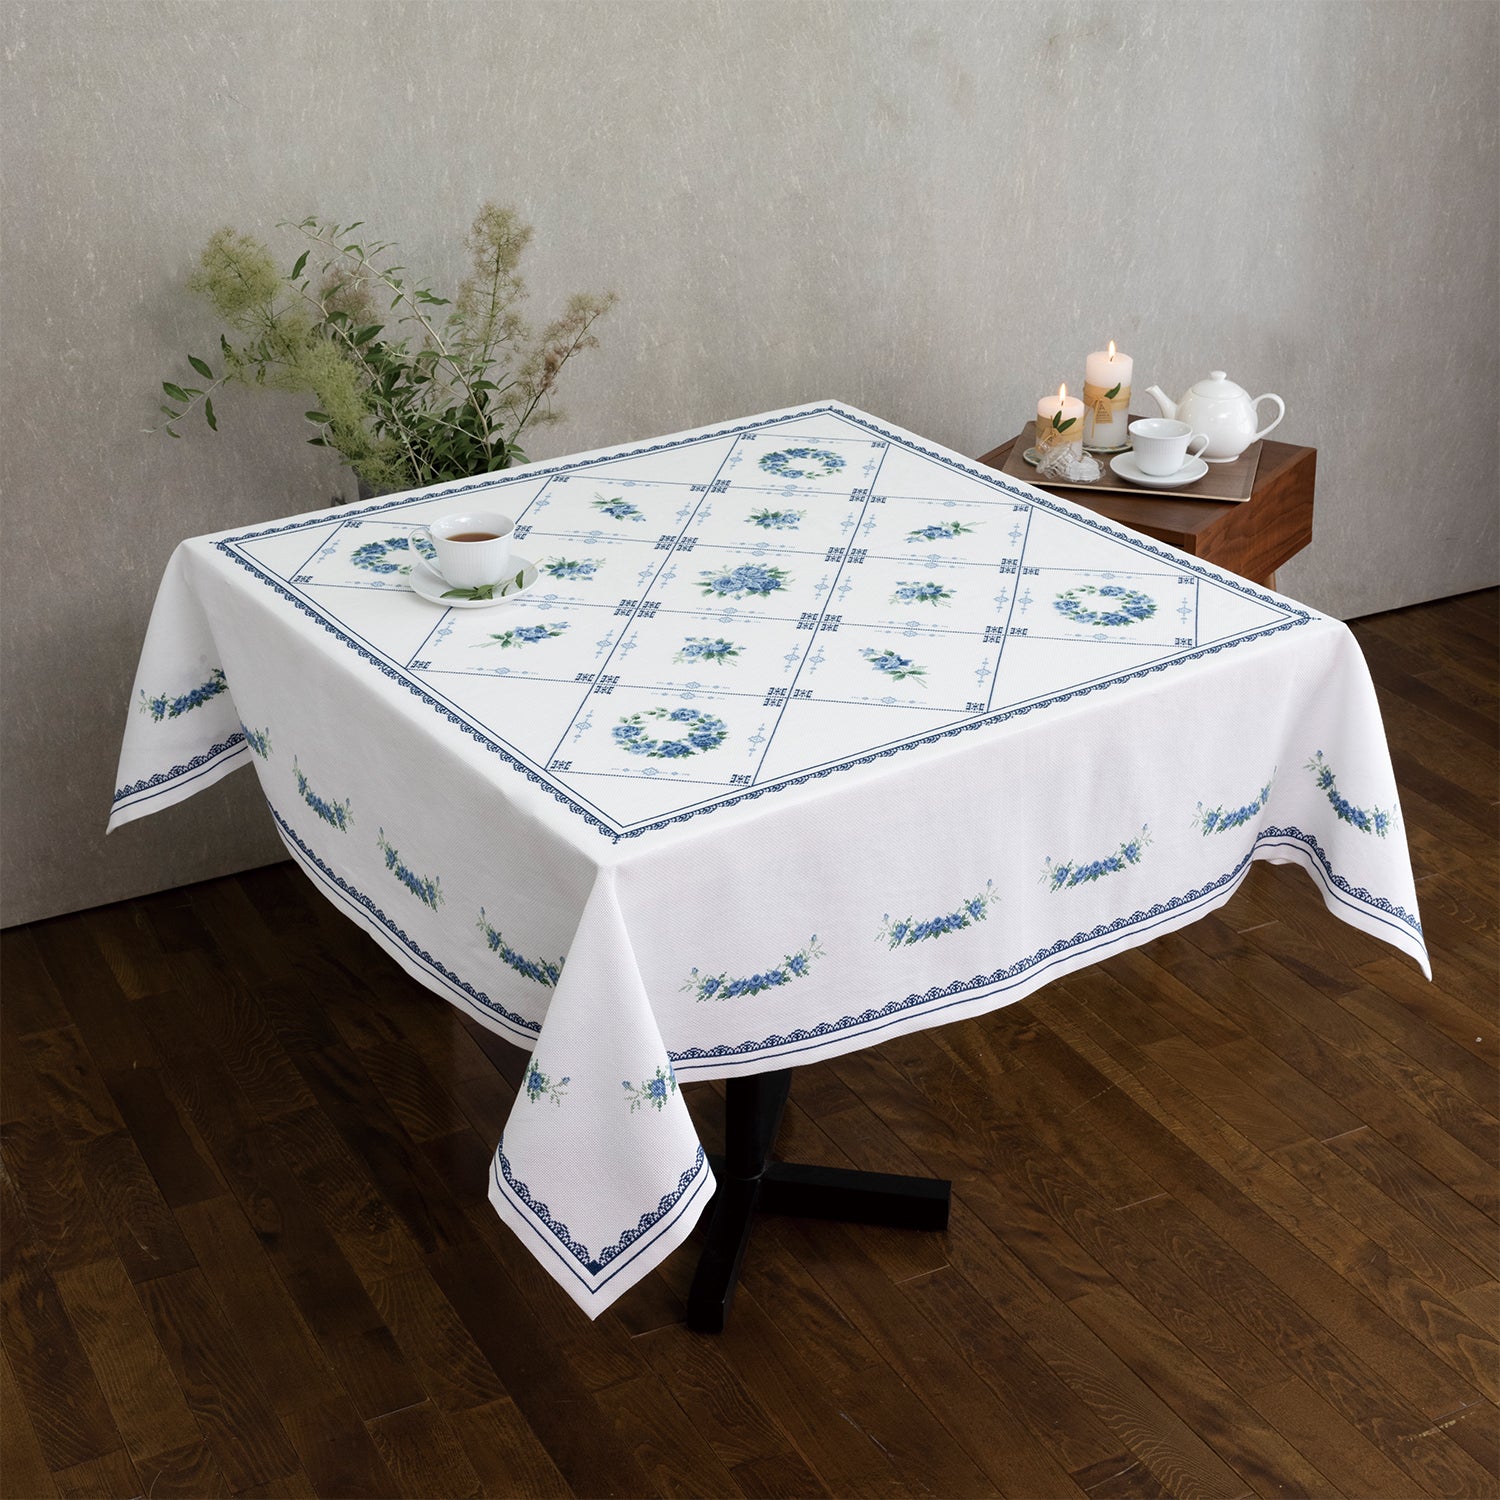 オノエ・メグミ クロスステッチキット ブルーローズモチーフのテーブル